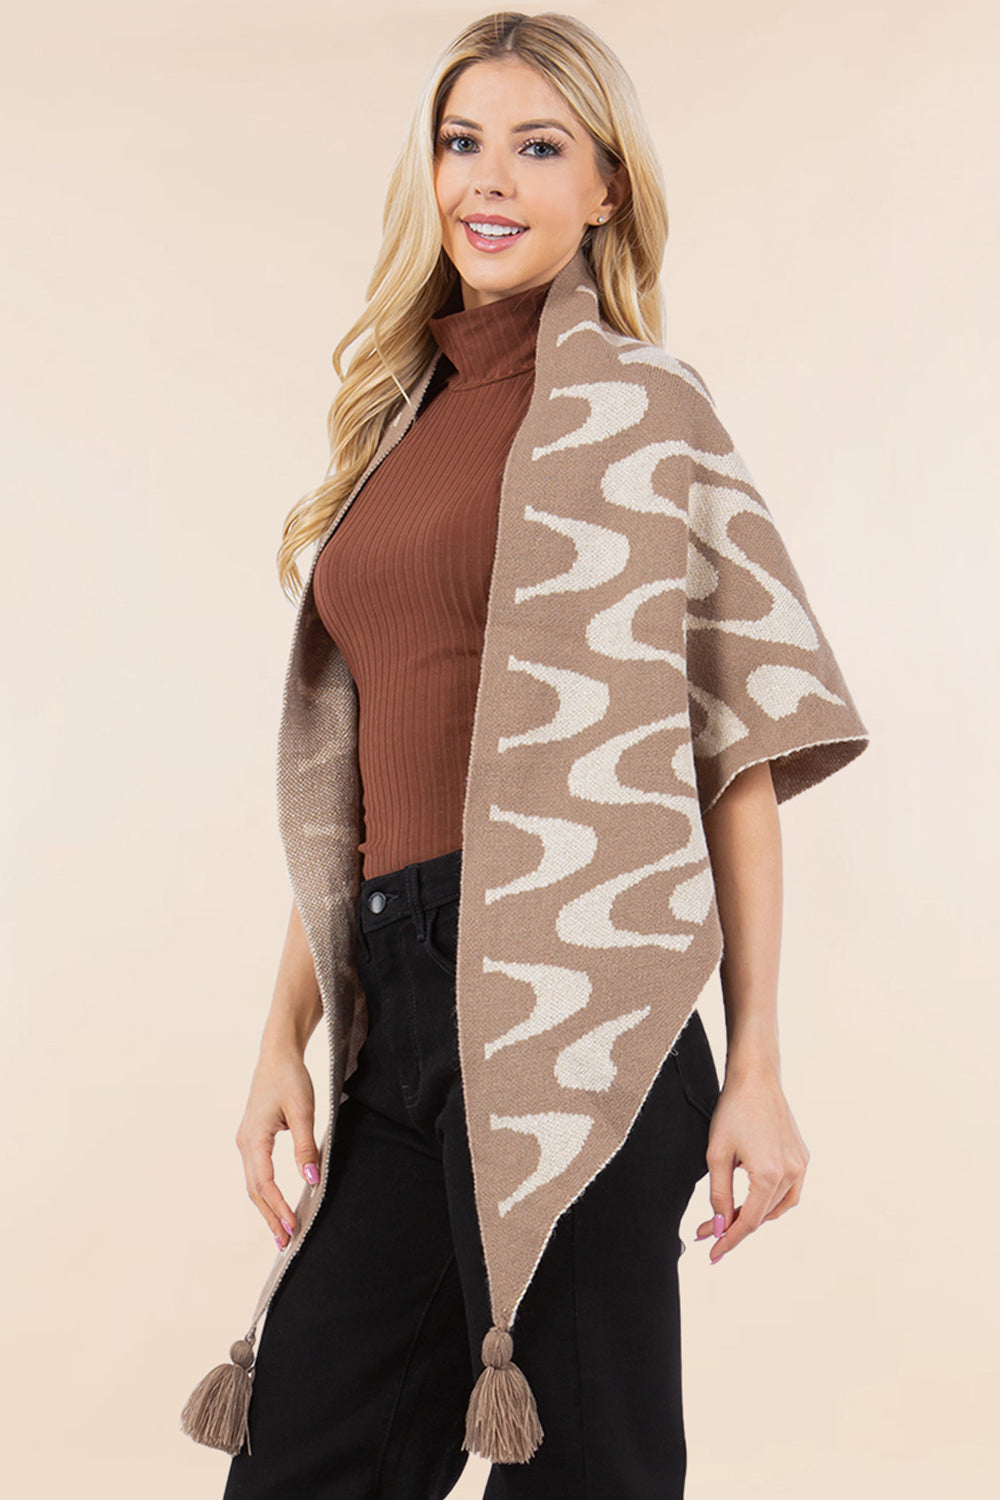 OA-4270 geometric design traingle shawl